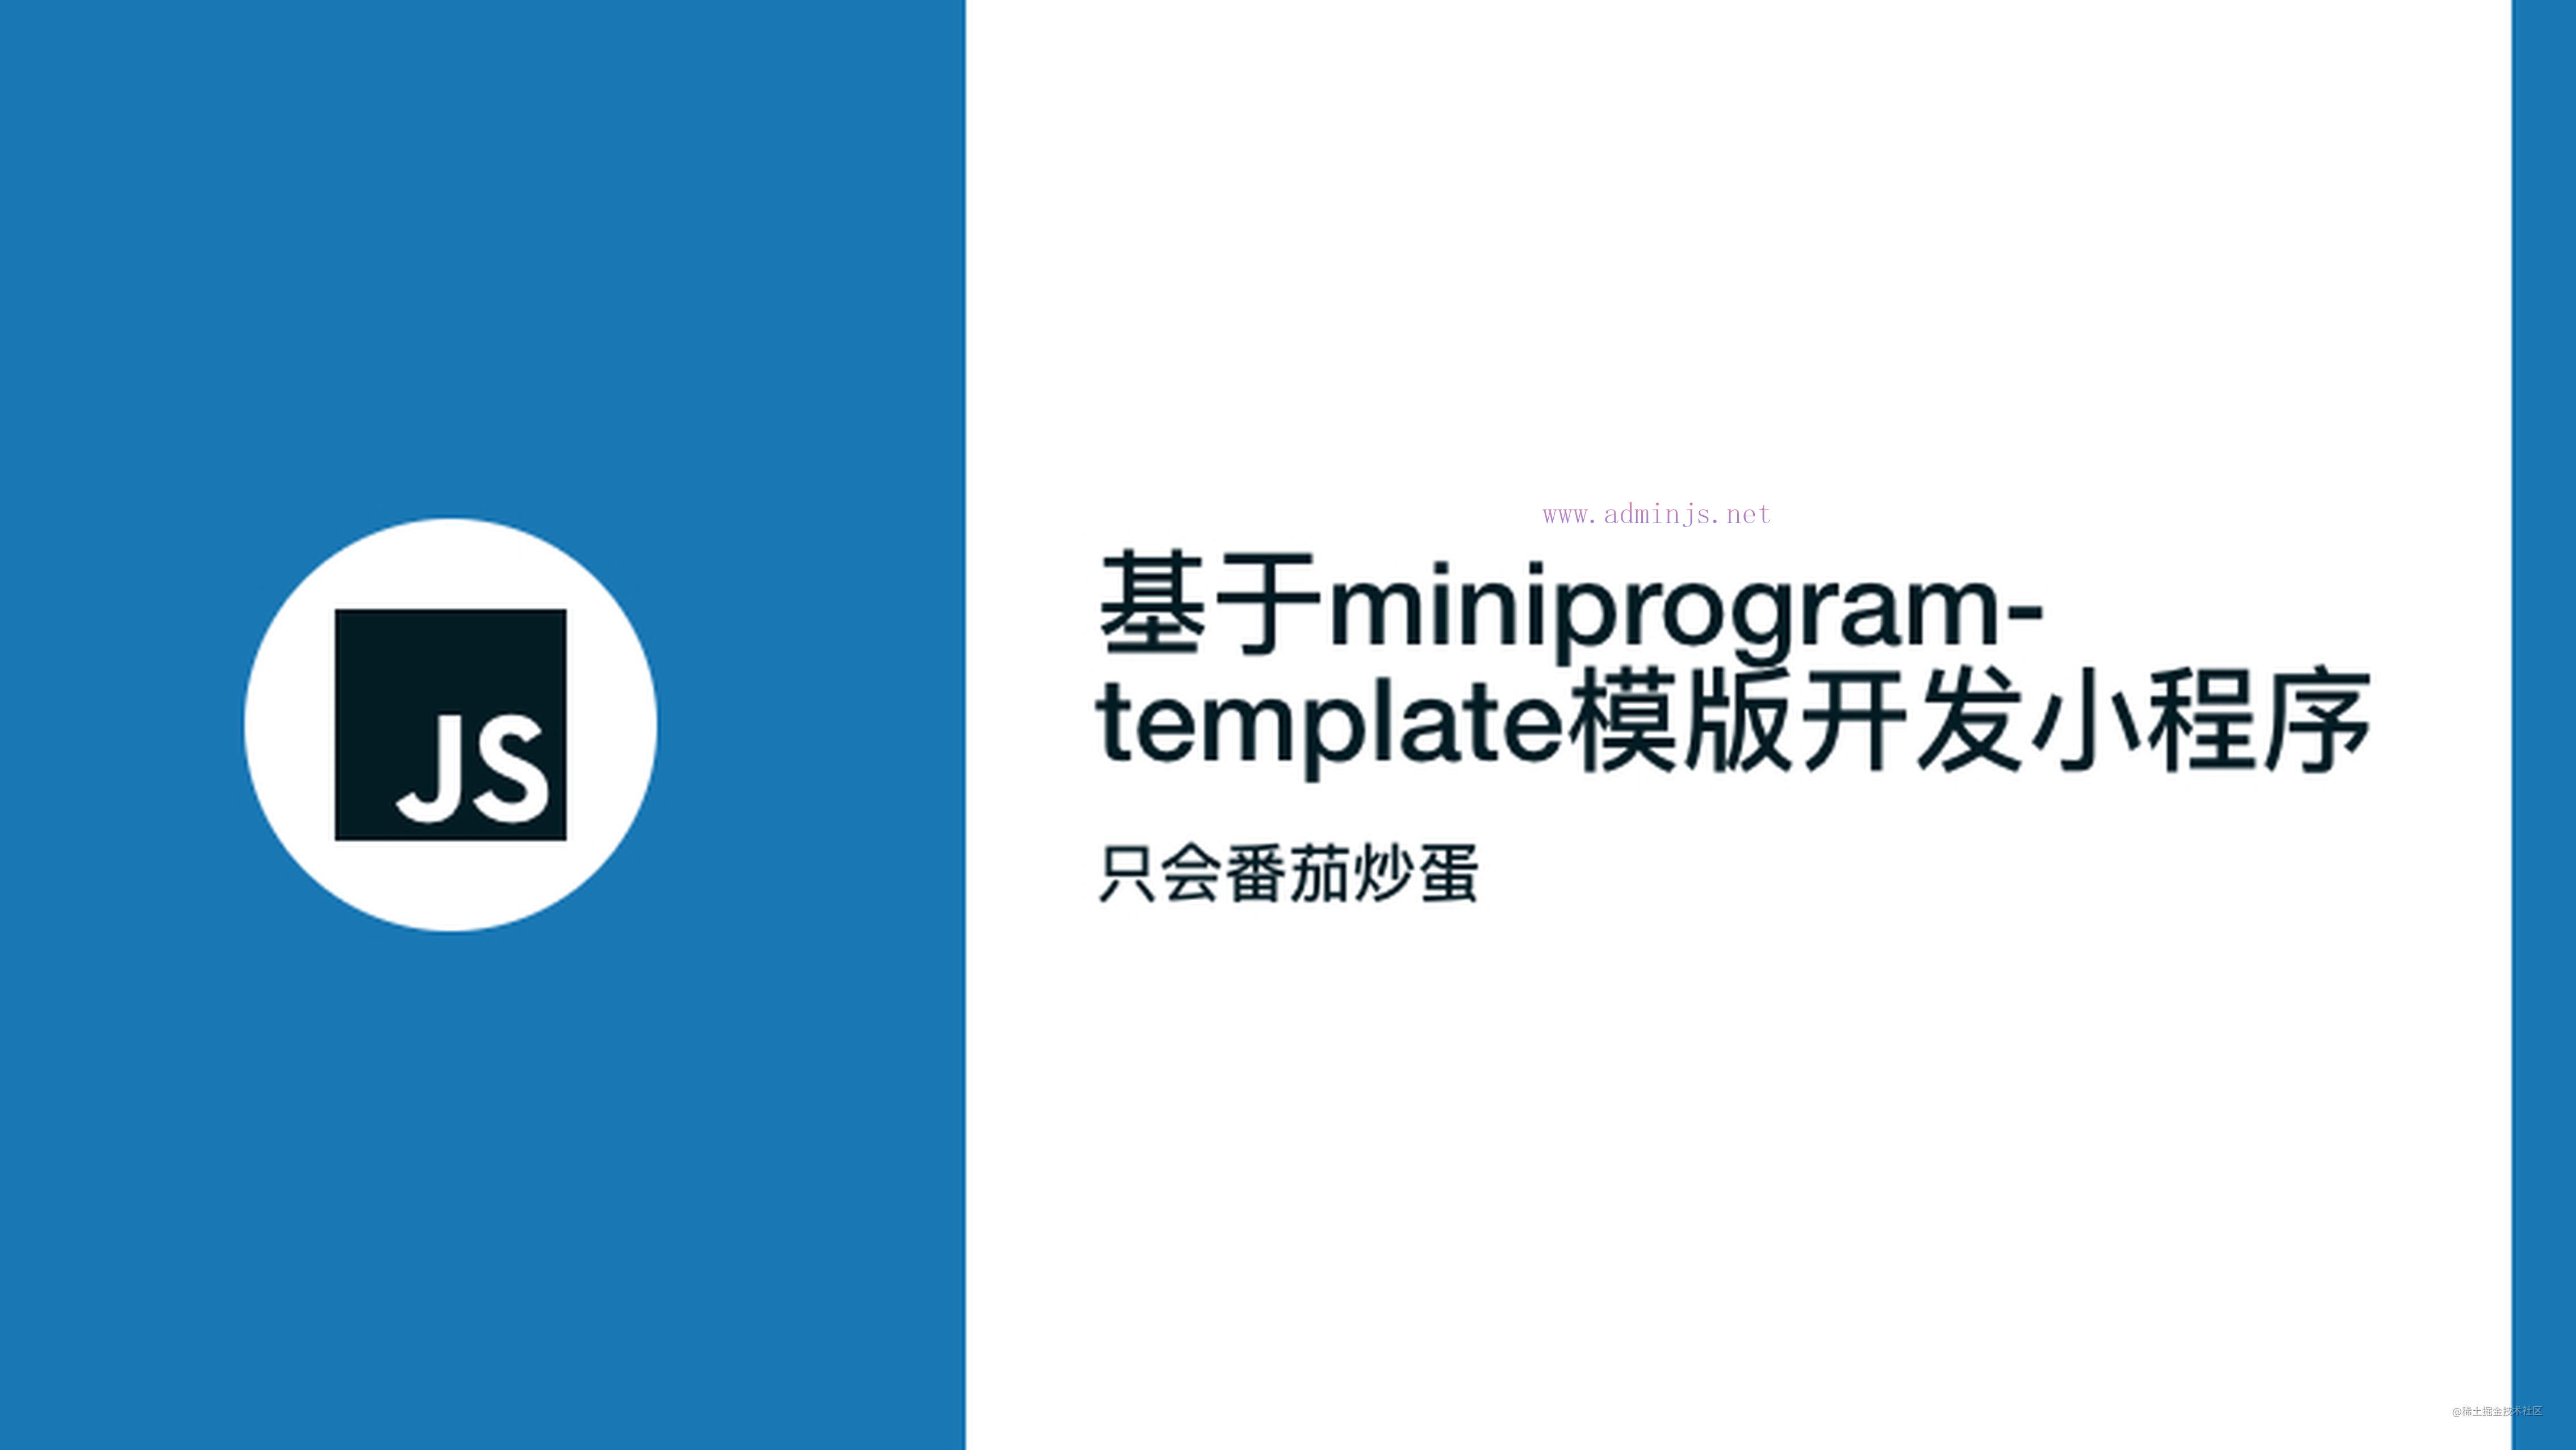 微信小程序高级指南-基于miniprogram-template模版开发小程序